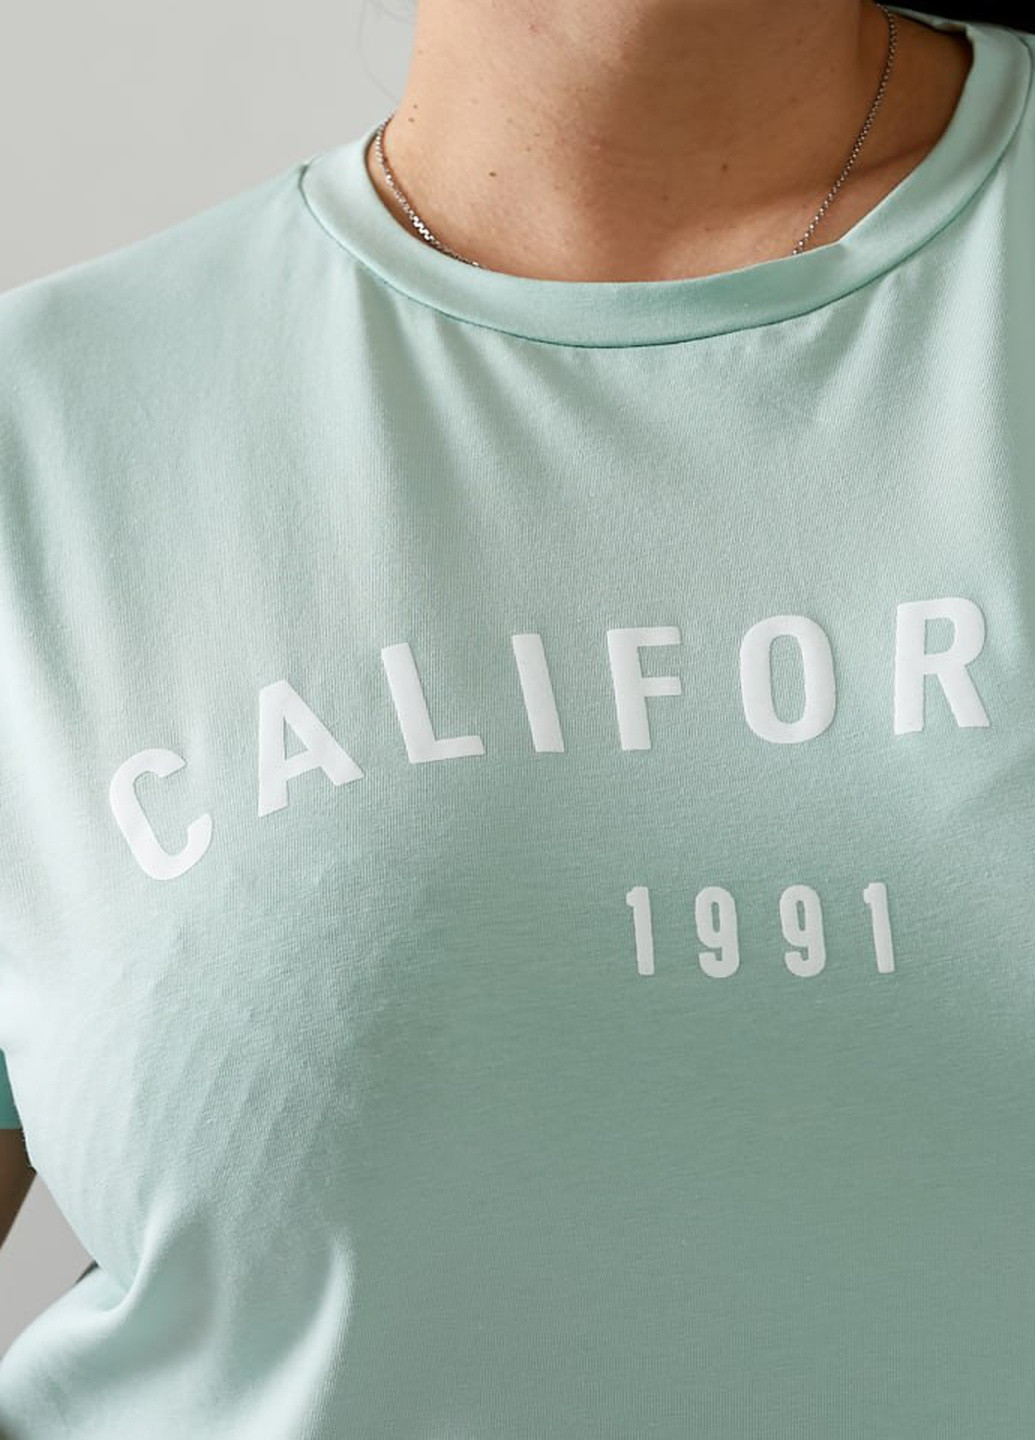 Мятная женская футболка california цвет мятный р.42/46 432427 New Trend